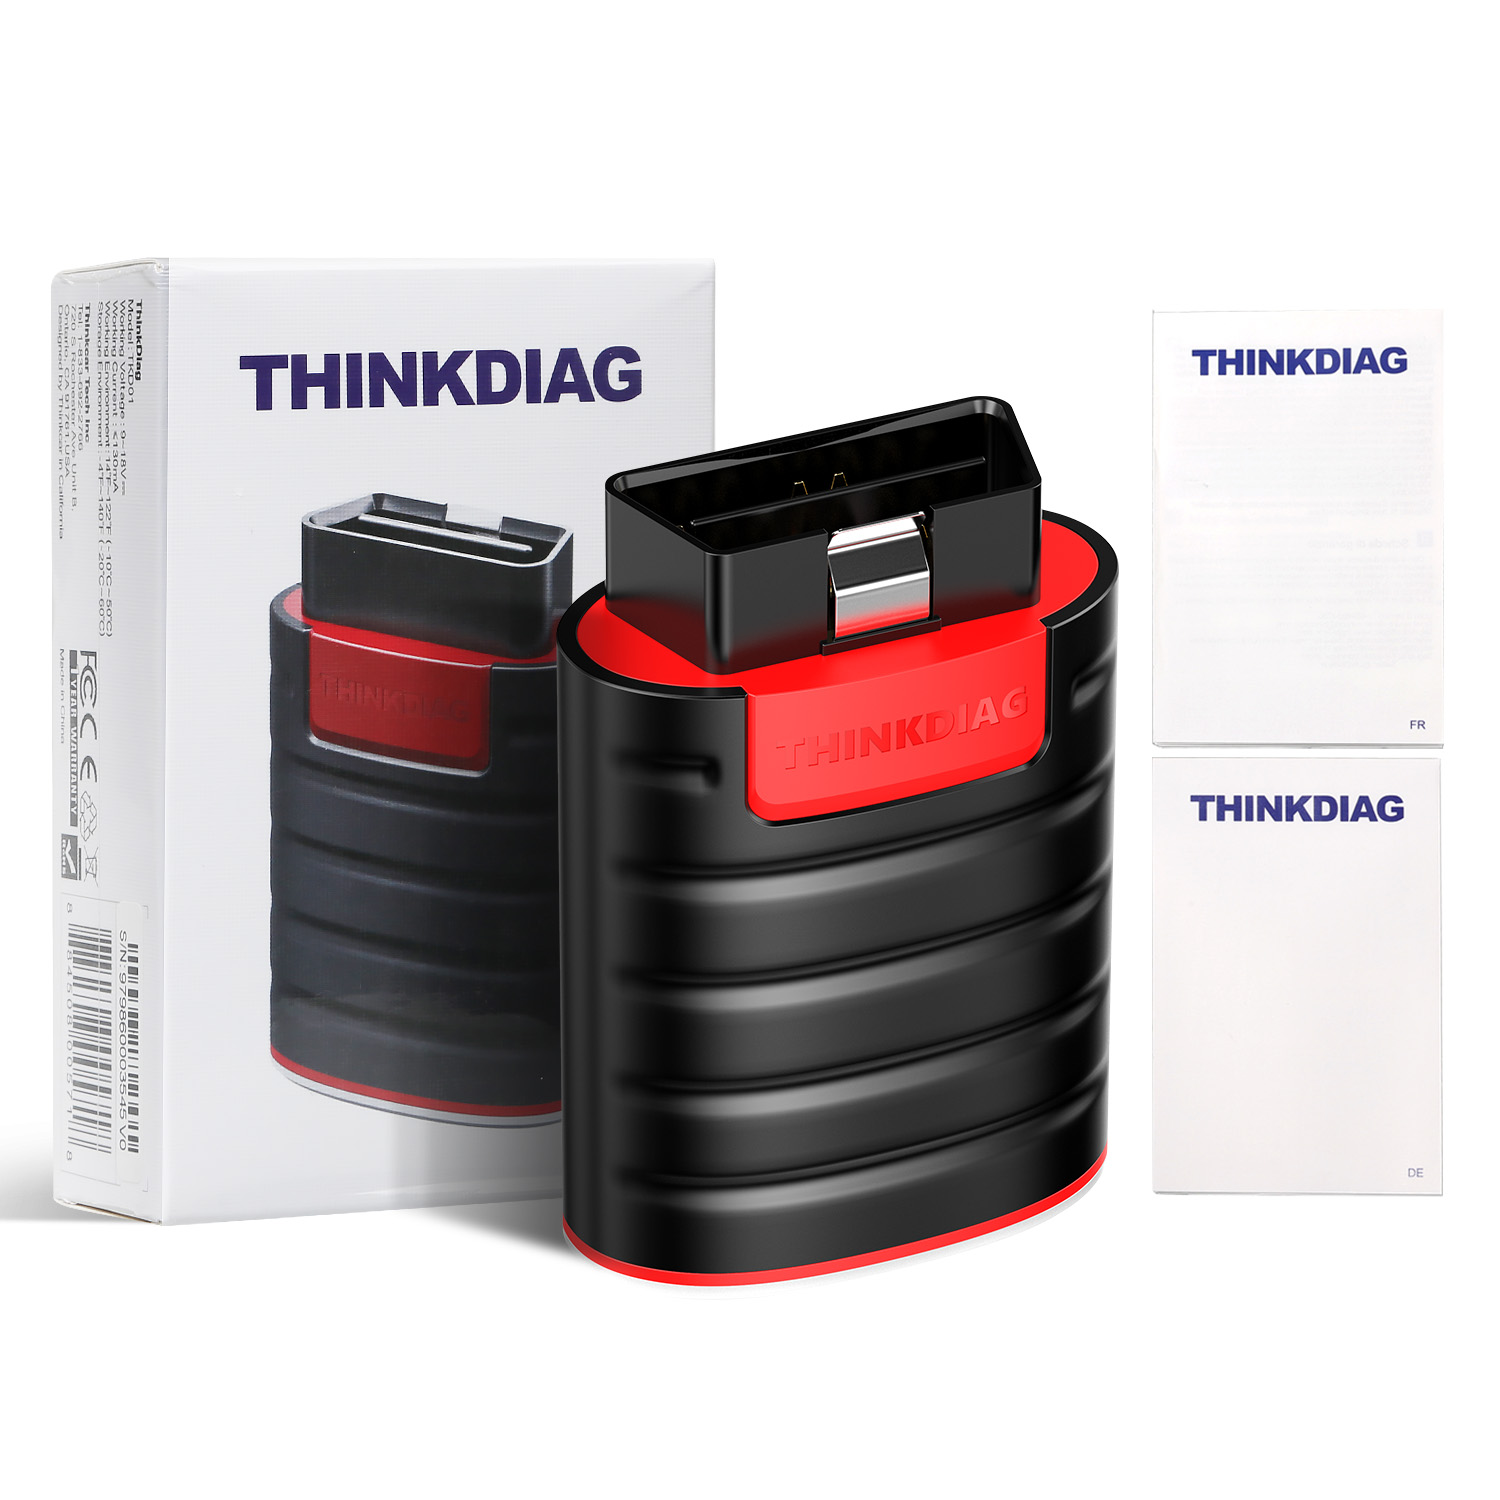 Thinkdiag OBD2 Full System Scanner Serial Number 9798601*** Old boot  V1.23.004